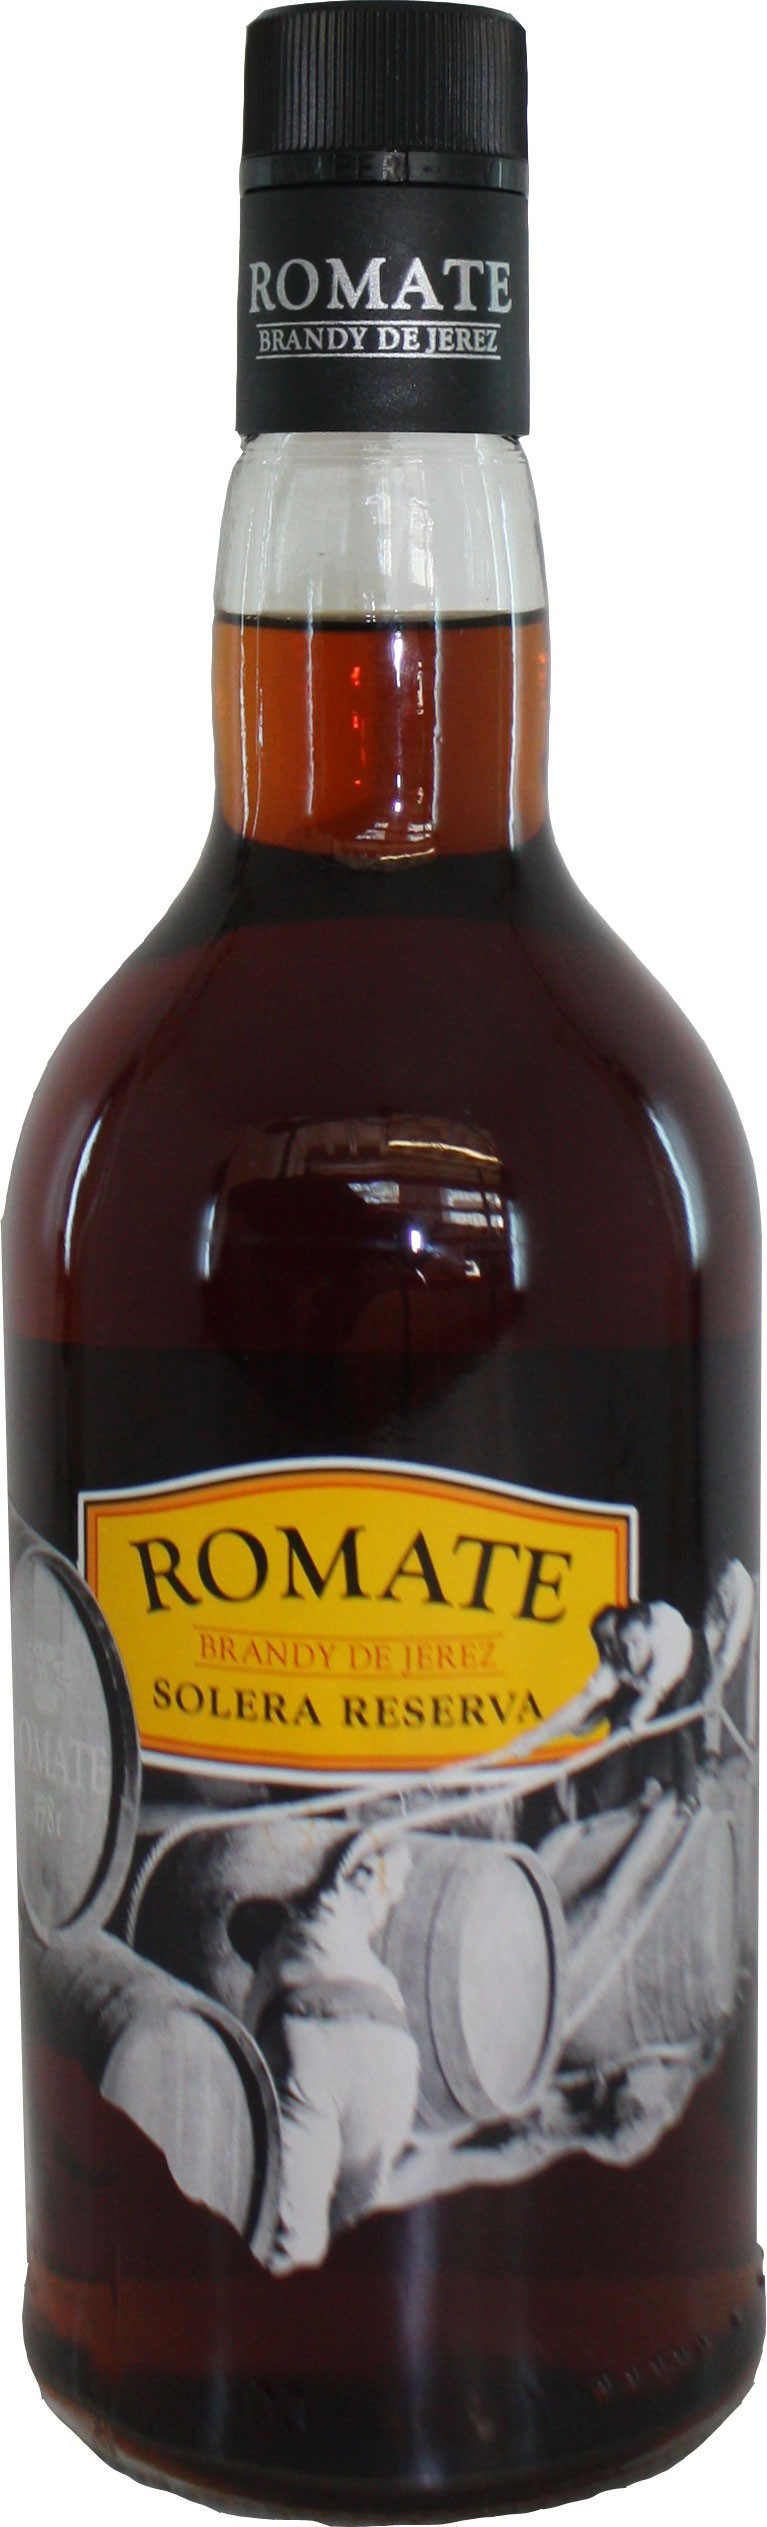 Romate Solera Reserva Spanish Brandy 70cl